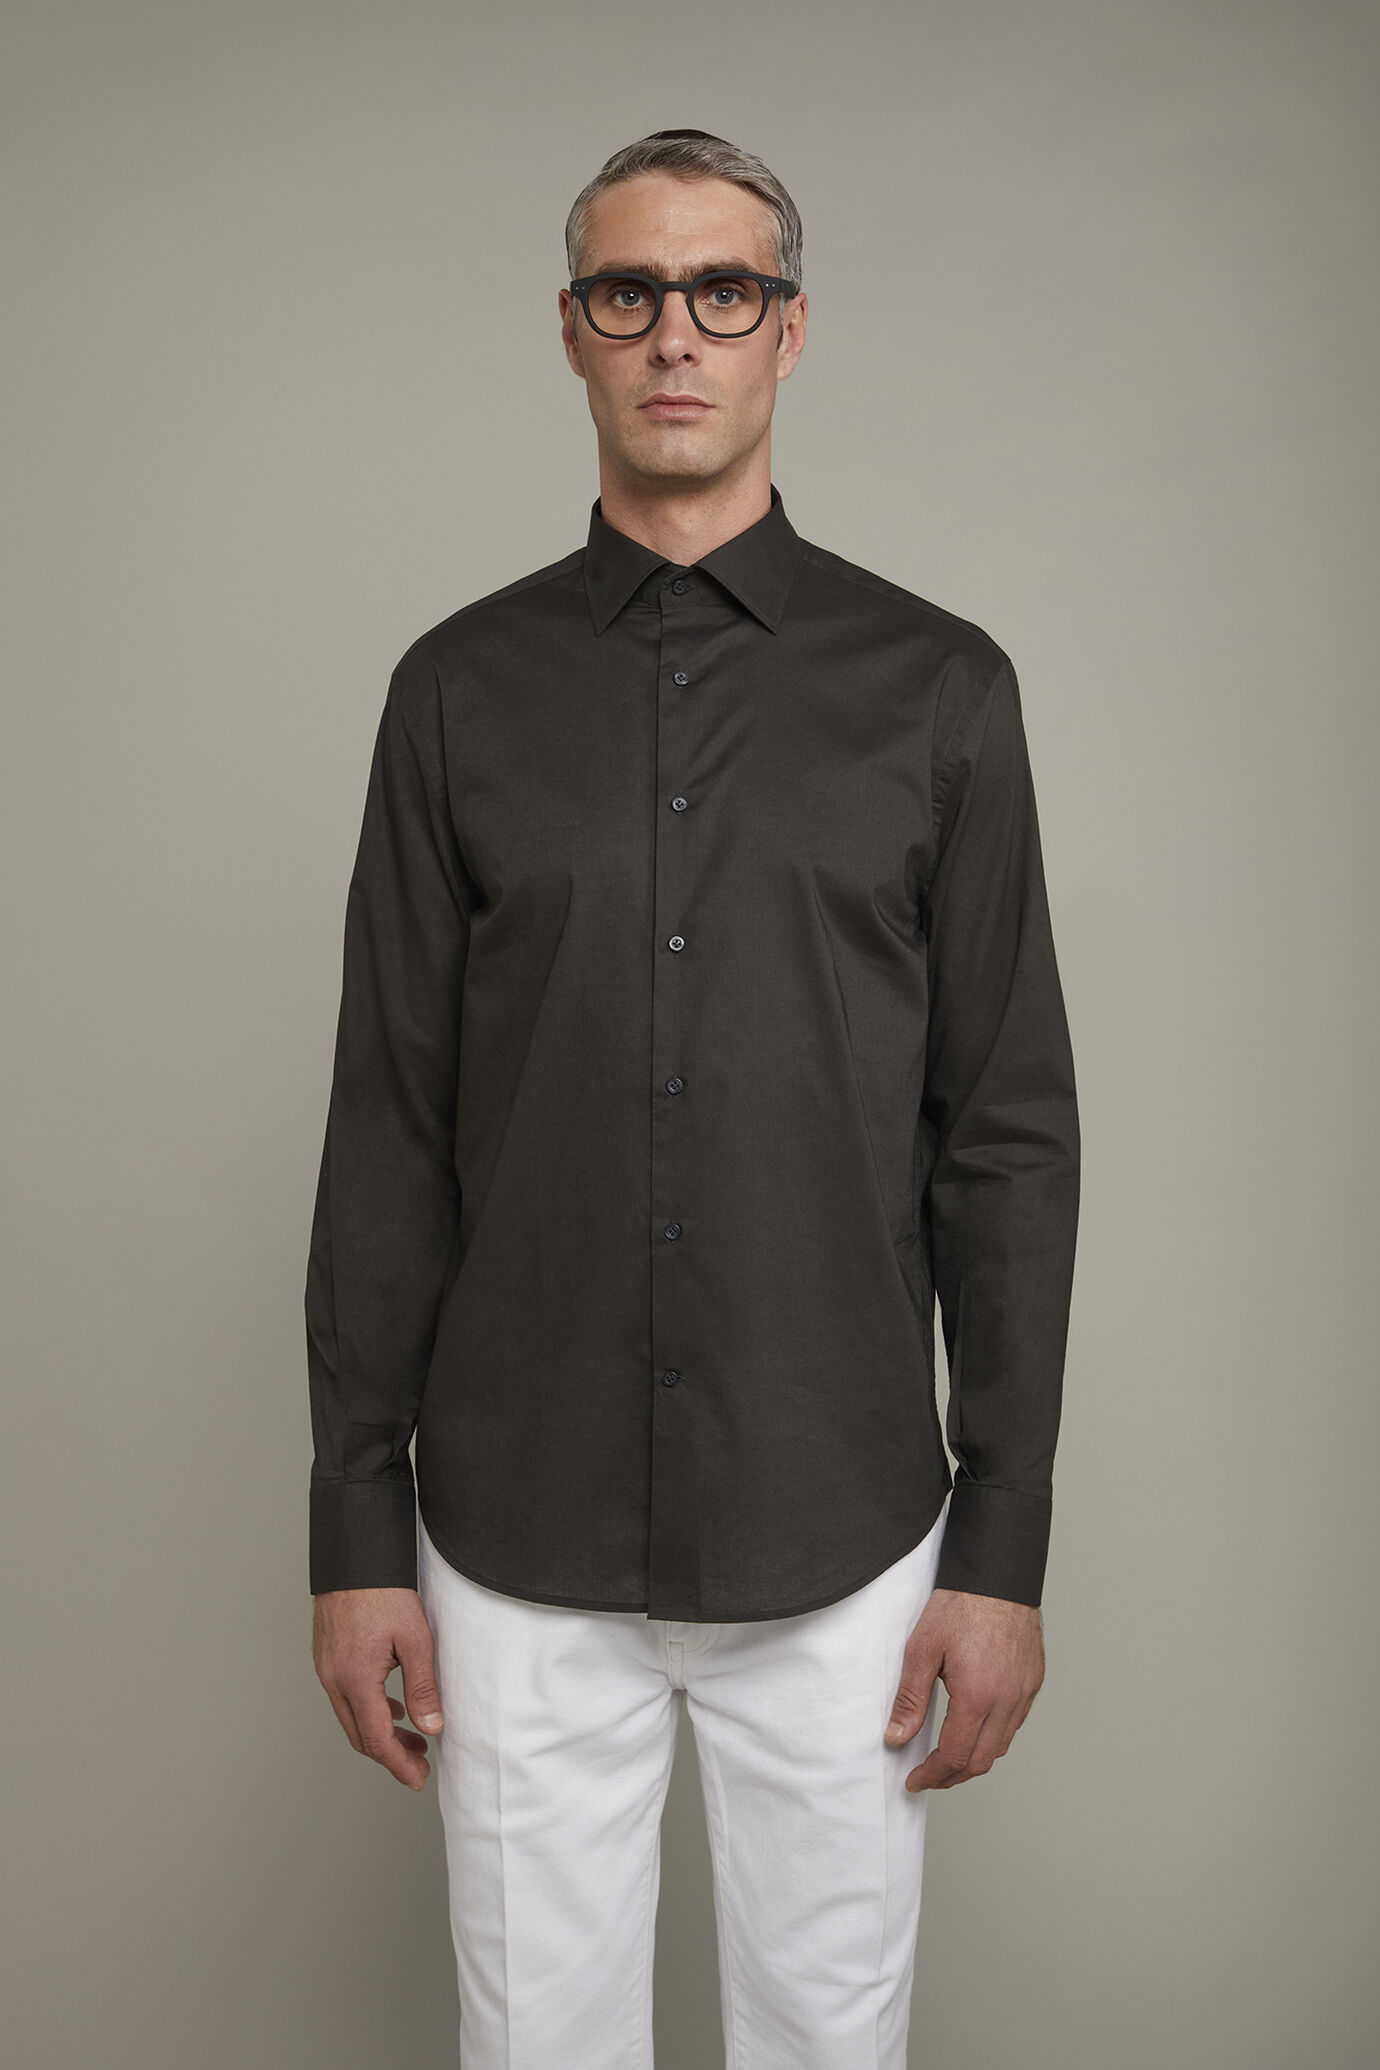 Camicia casual uomo collo classico 100% cotone tessuto mussola tinta unita comfort fit